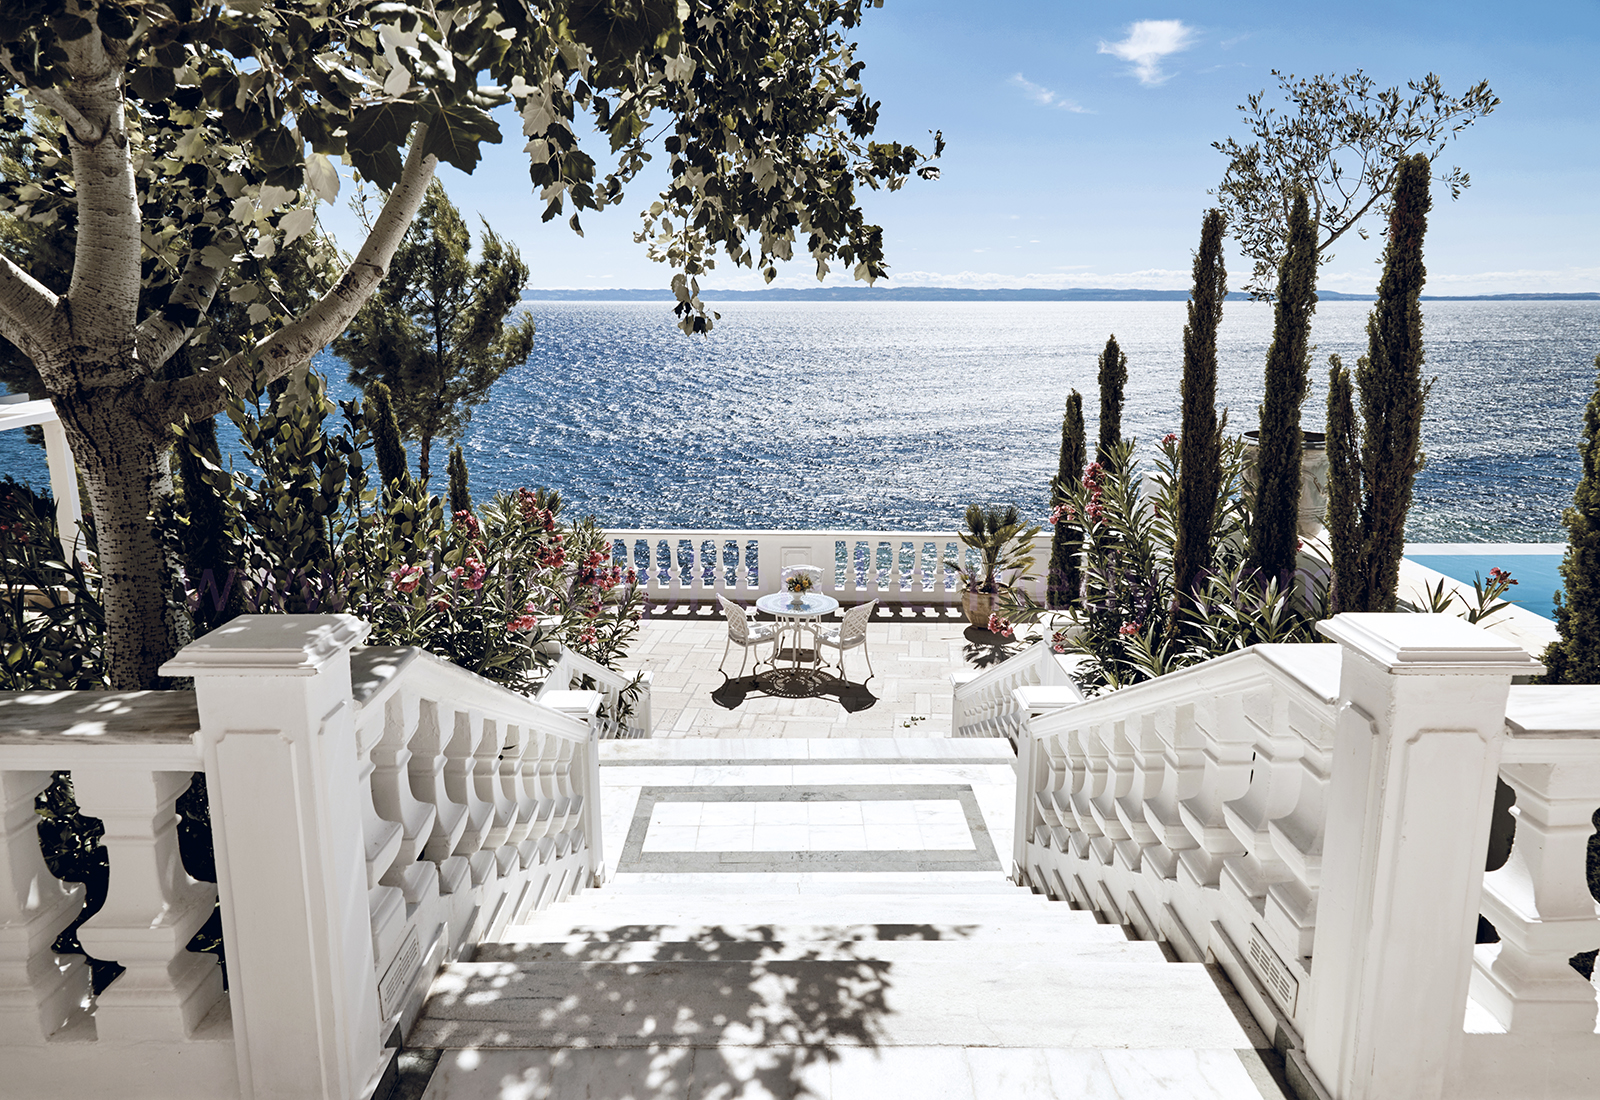 Danai Beach Resort & Villas. Titta i vår guide när du vill åka till Grekland.